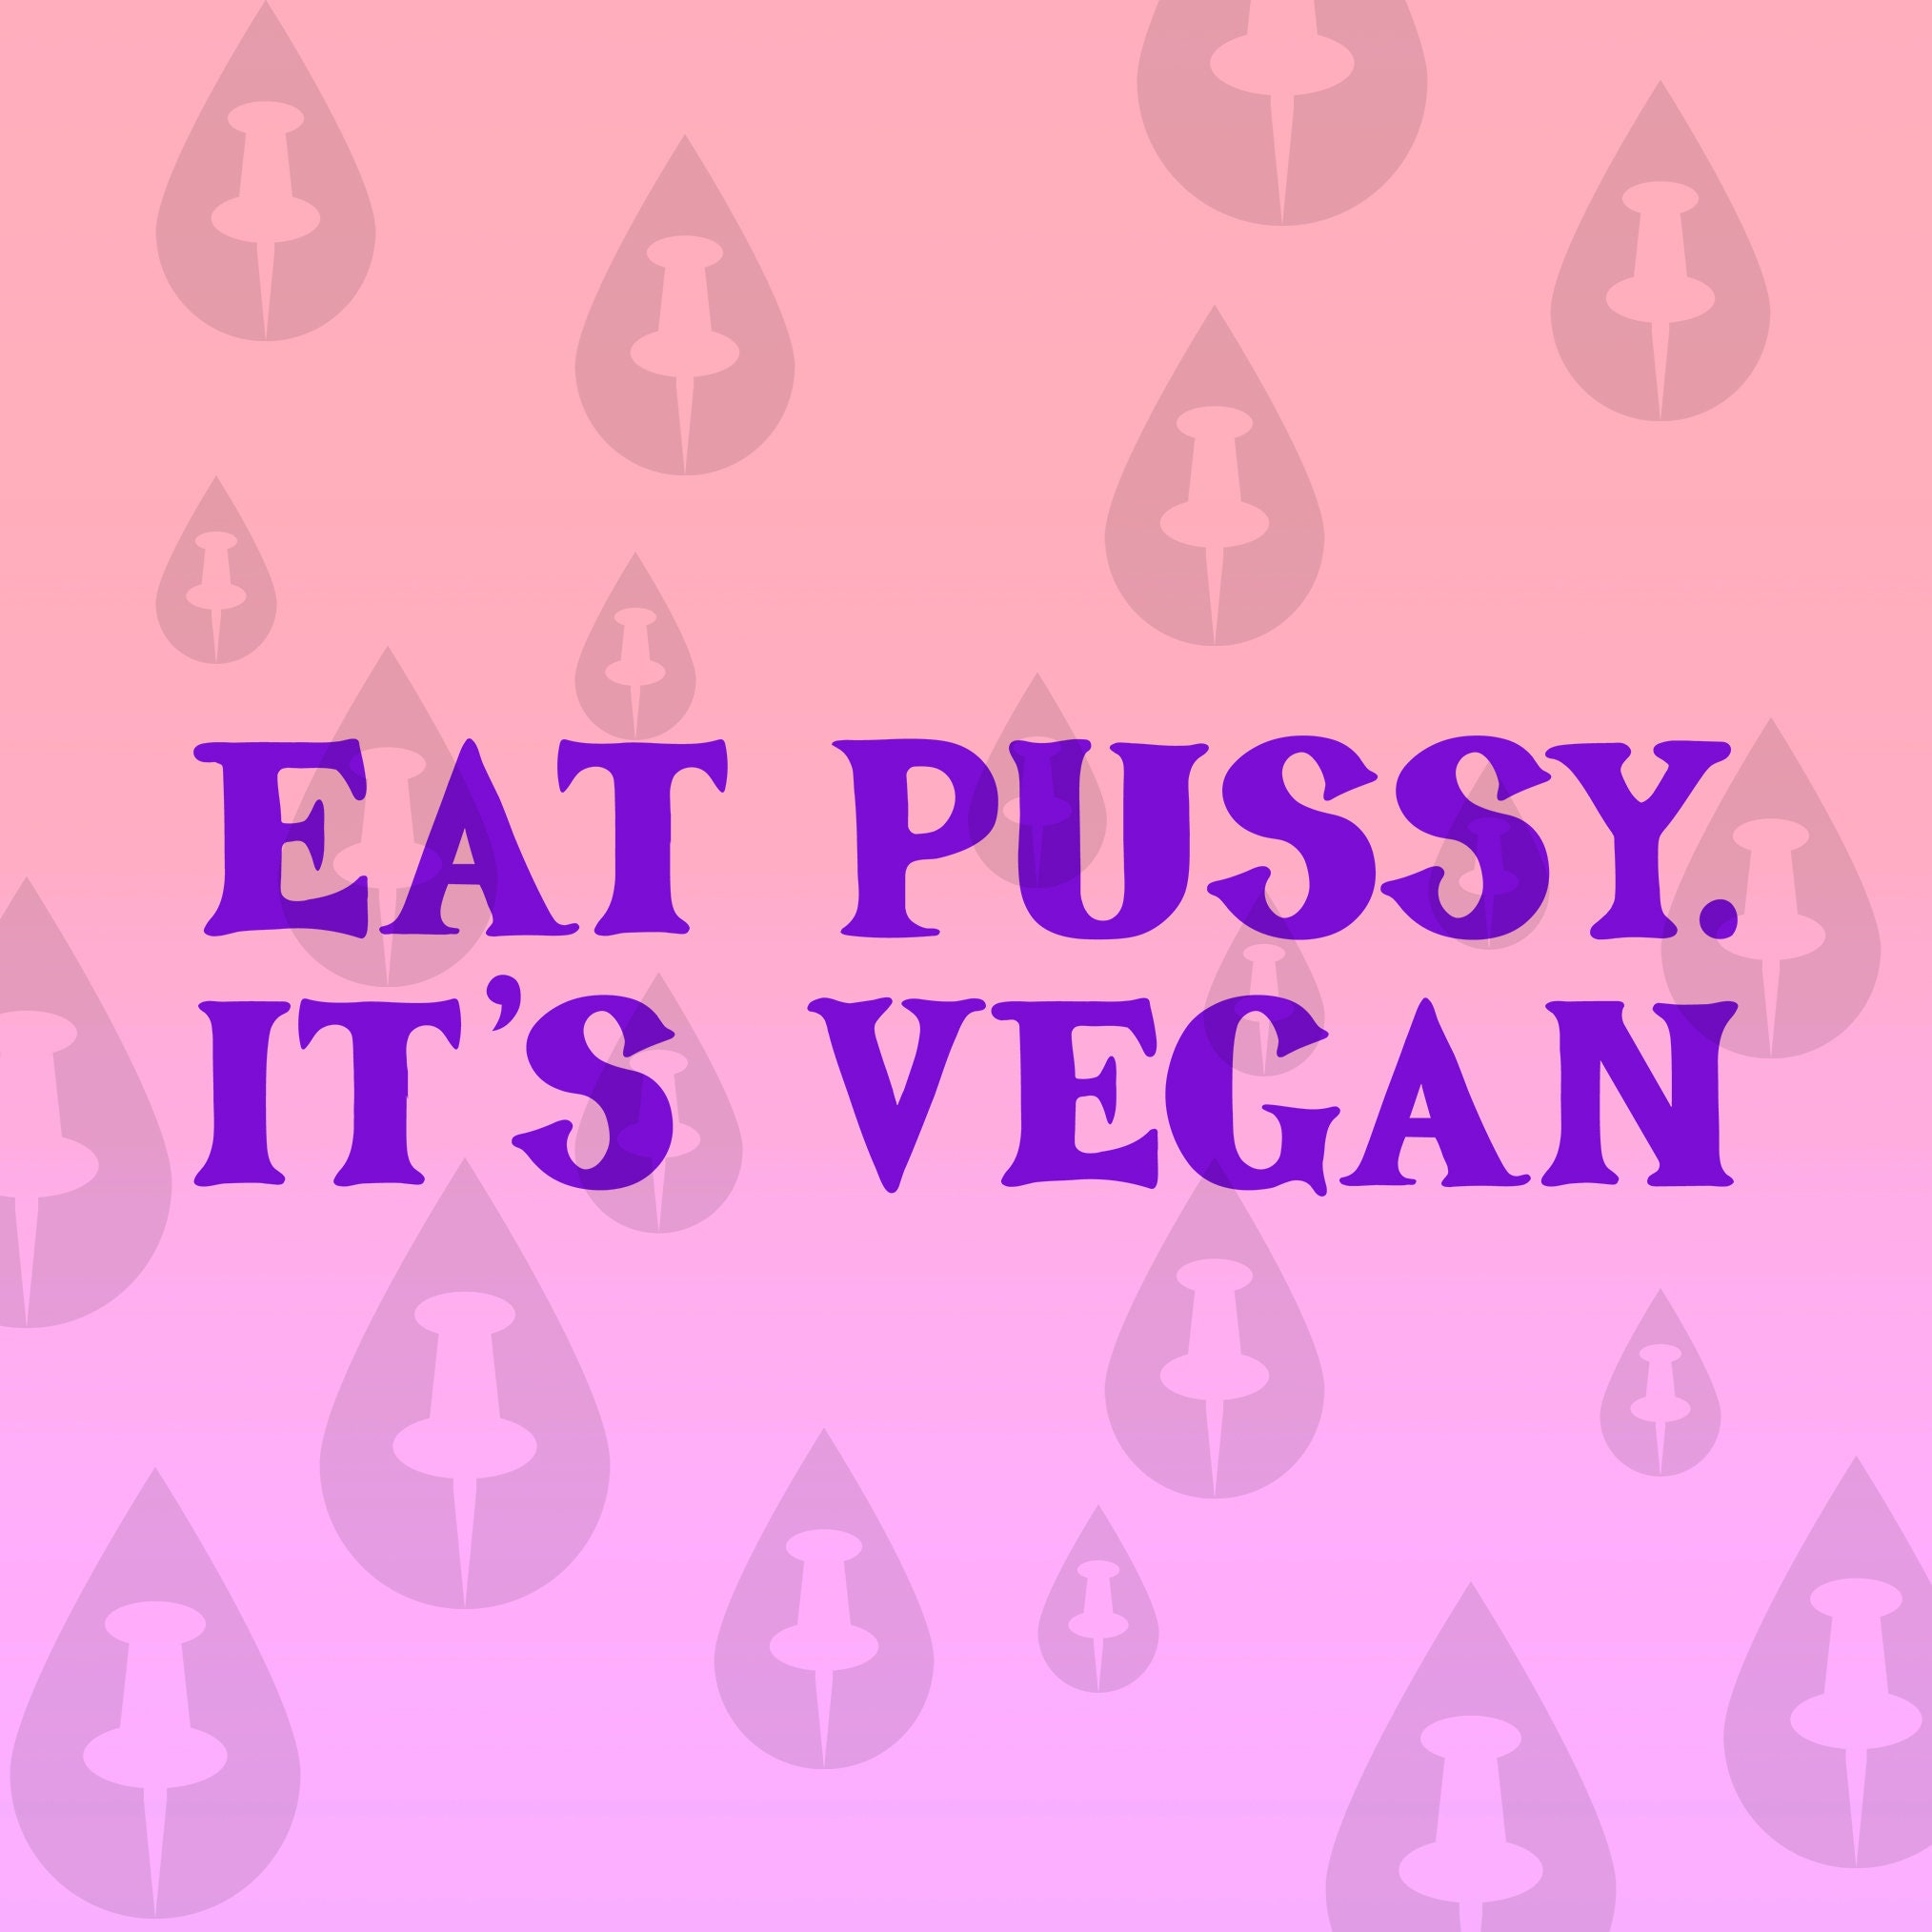 Eating pussy favor meme